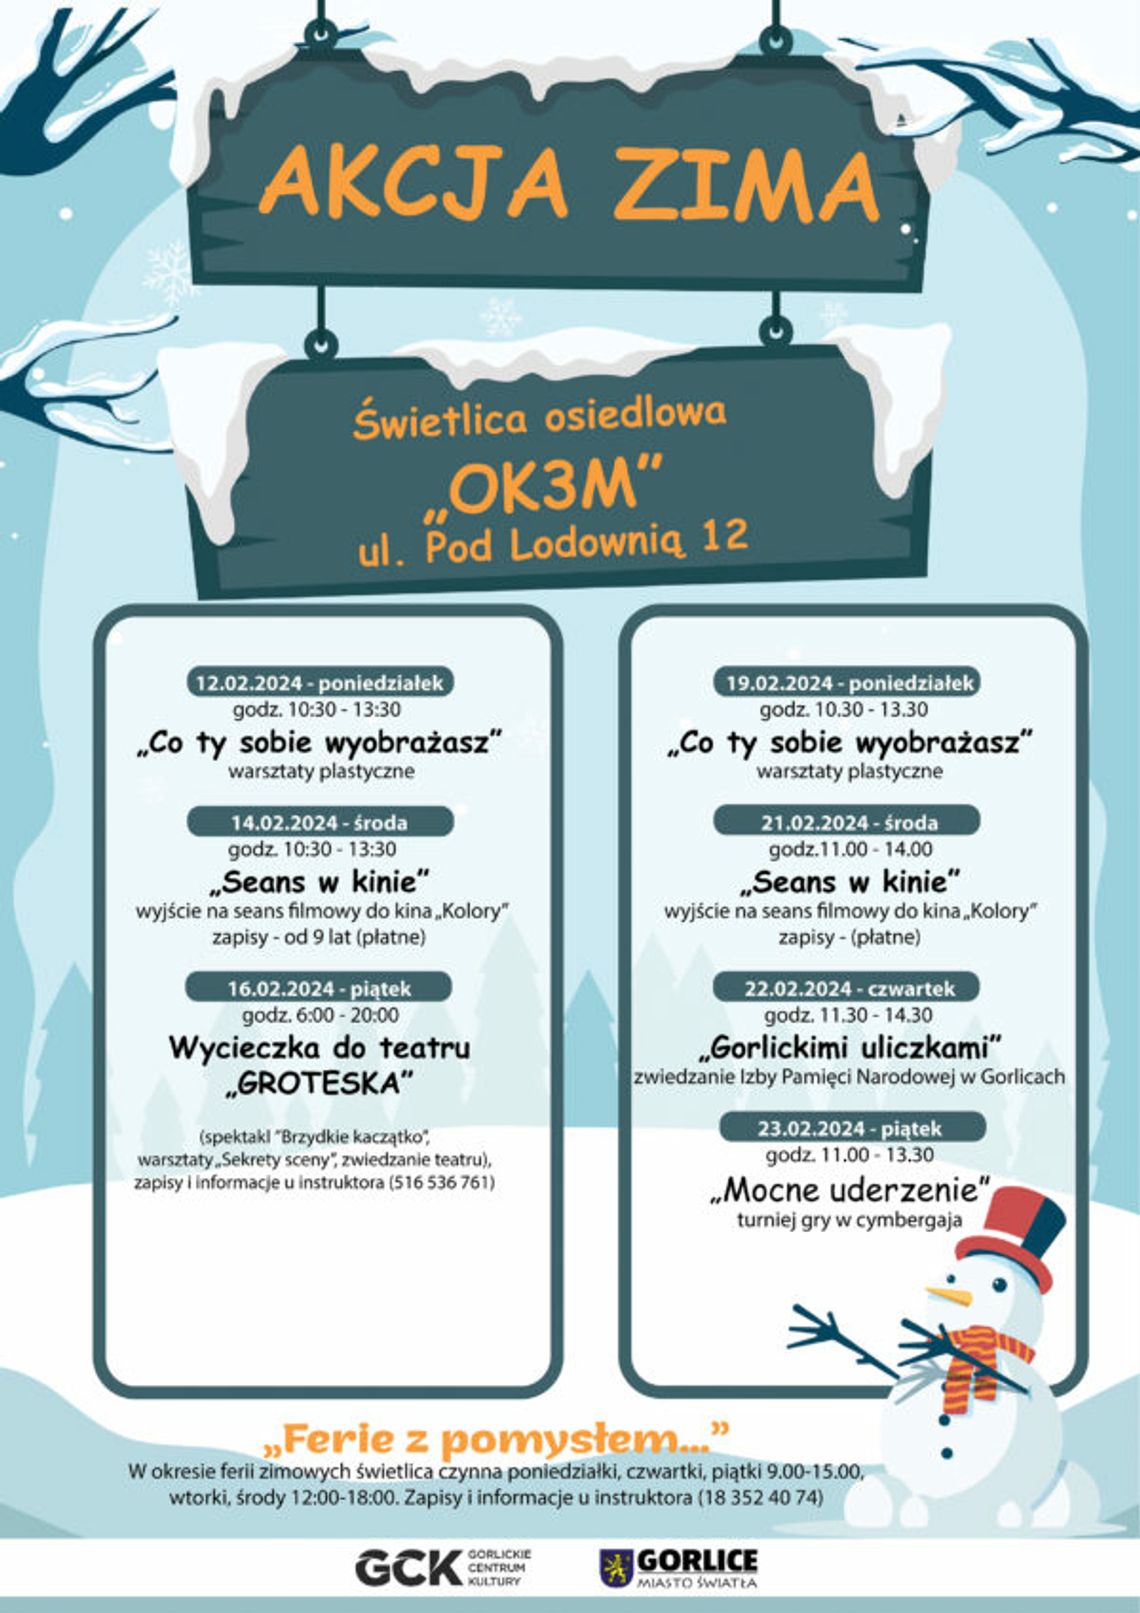 Akcja zima. Świetlica osiedlowa „OK3M” | halogorlice.info